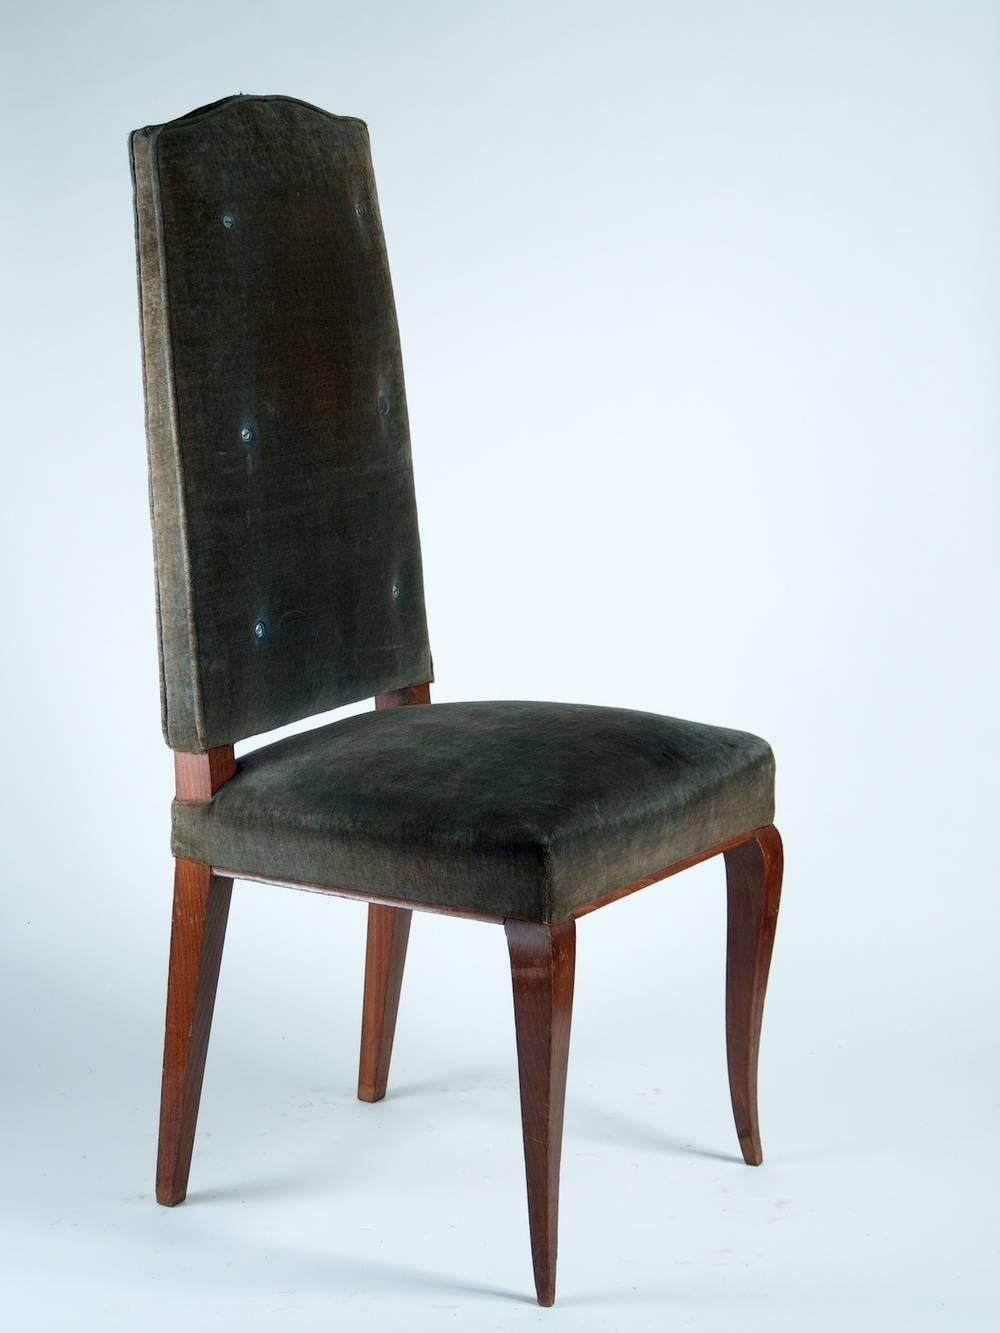 Französischer Art-Déco-Satz von sechs Stühlen aus Buche aus den 1940er Jahren.

Bitte beachten Sie, dass diese Stühle auf den Fotos unrestauriert sind.

**Preis beinhaltet die ordnungsgemäße Restaurierung, Aufarbeitung und Neupolsterung mit dem